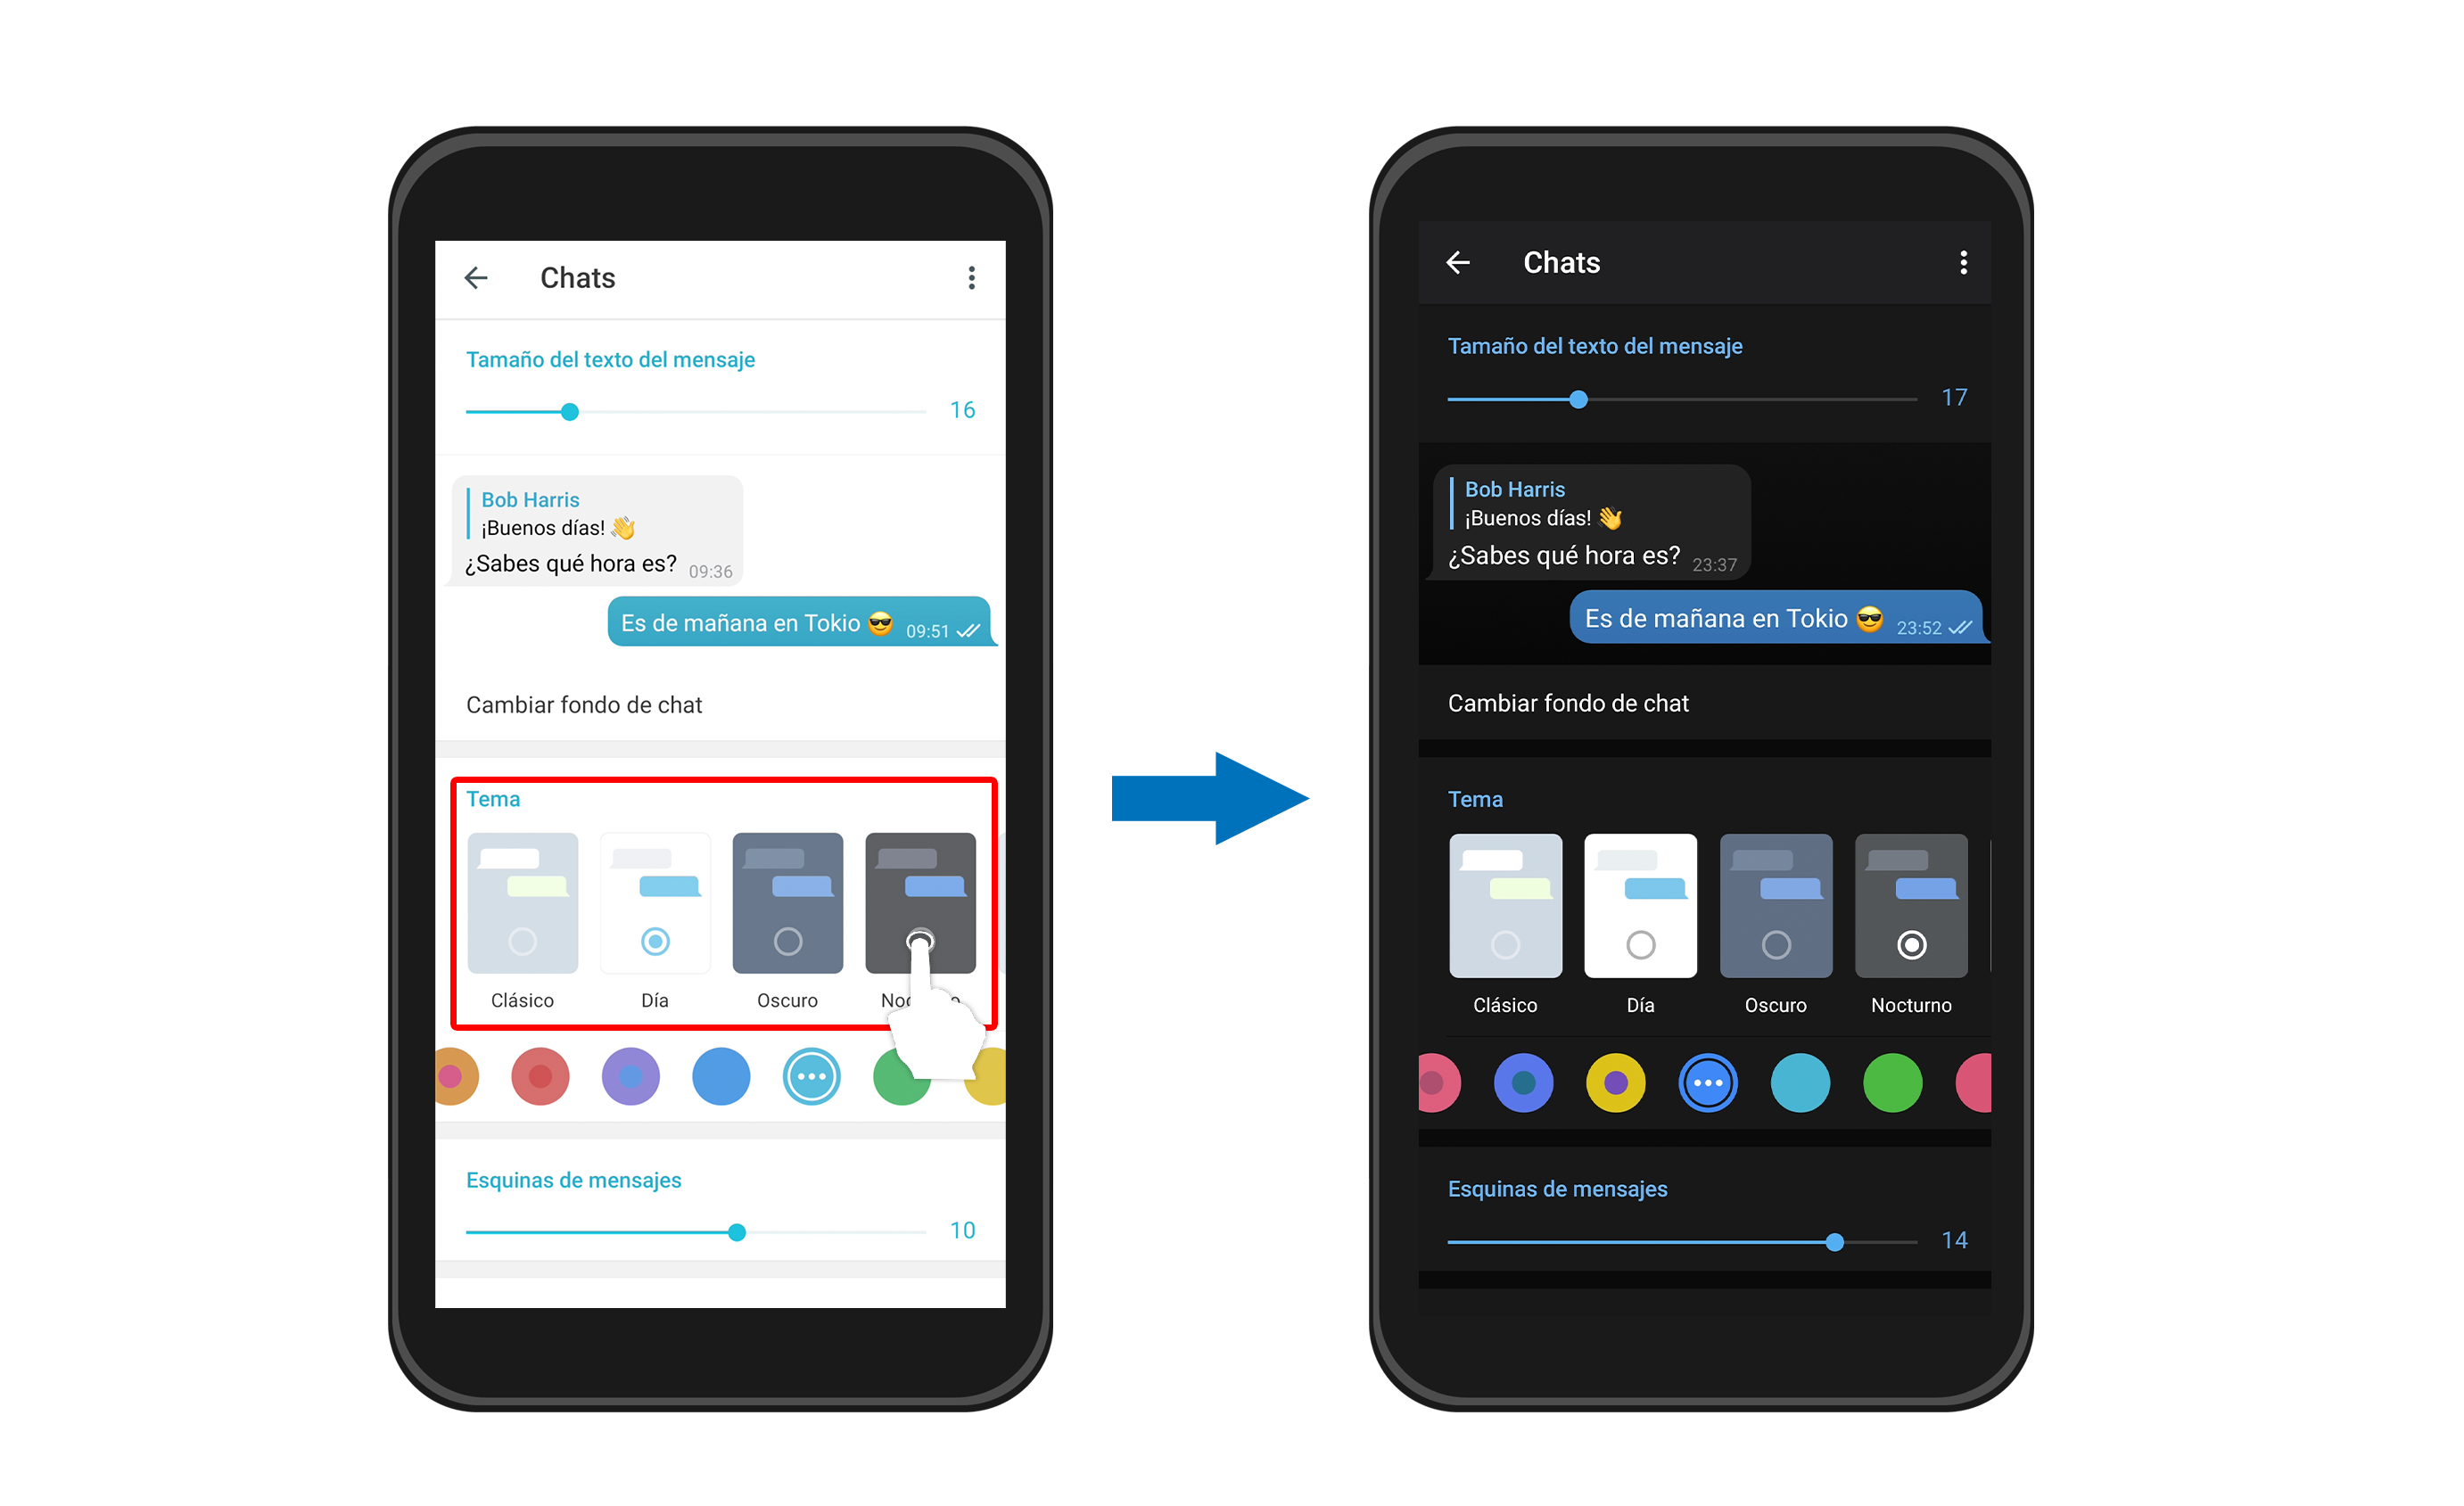 En estos ajustes, podrás personalizar el tema de visualización de tu chat, allí podrás elegir un color genérico para el tema y también activar el Modo oscuro en la App.